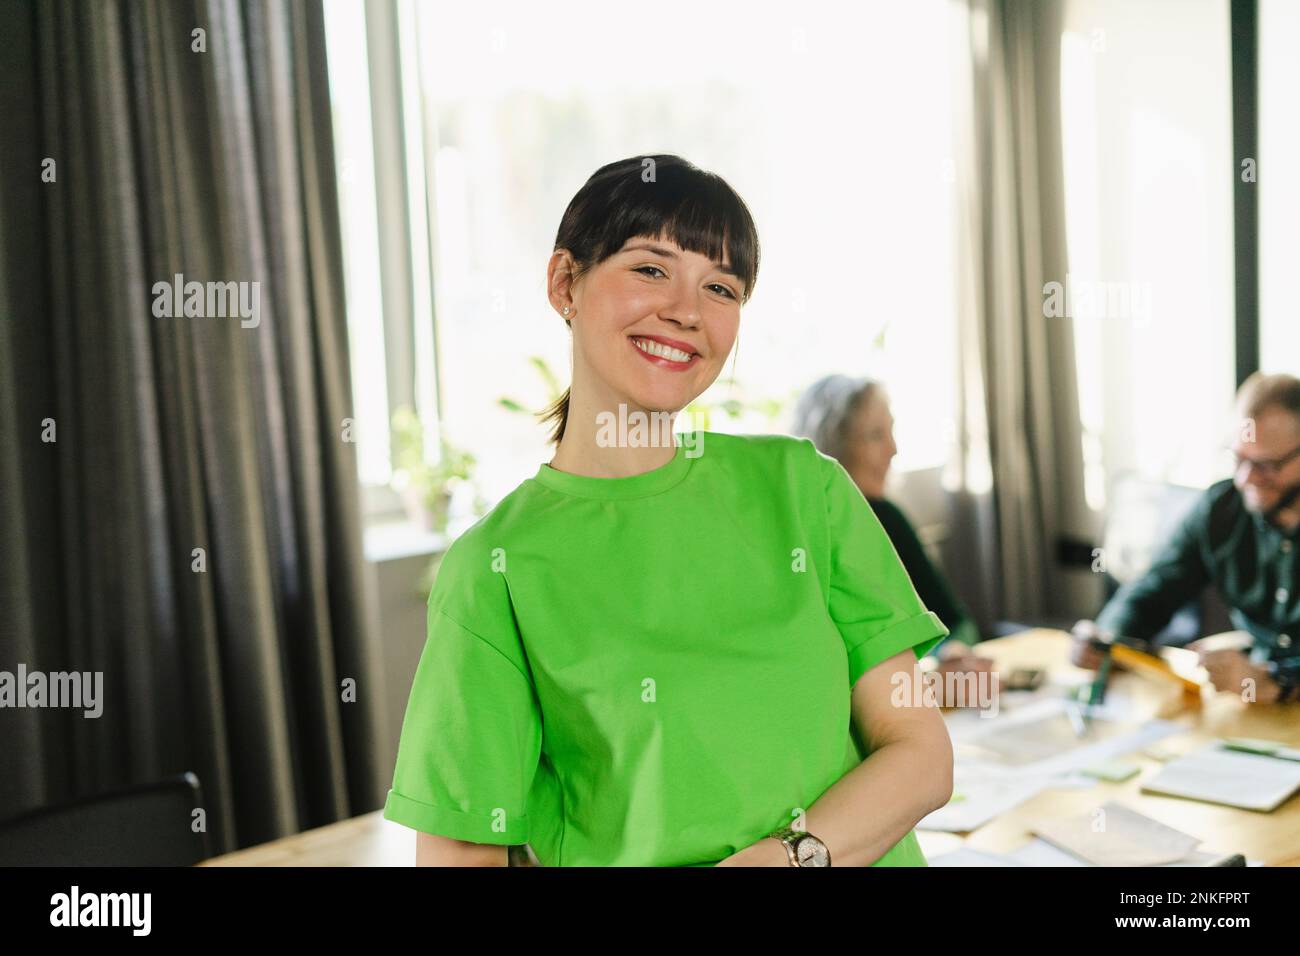 Retrato de mujer sonriente con camiseta verde durante una reunión en sala de conferencias Foto de stock